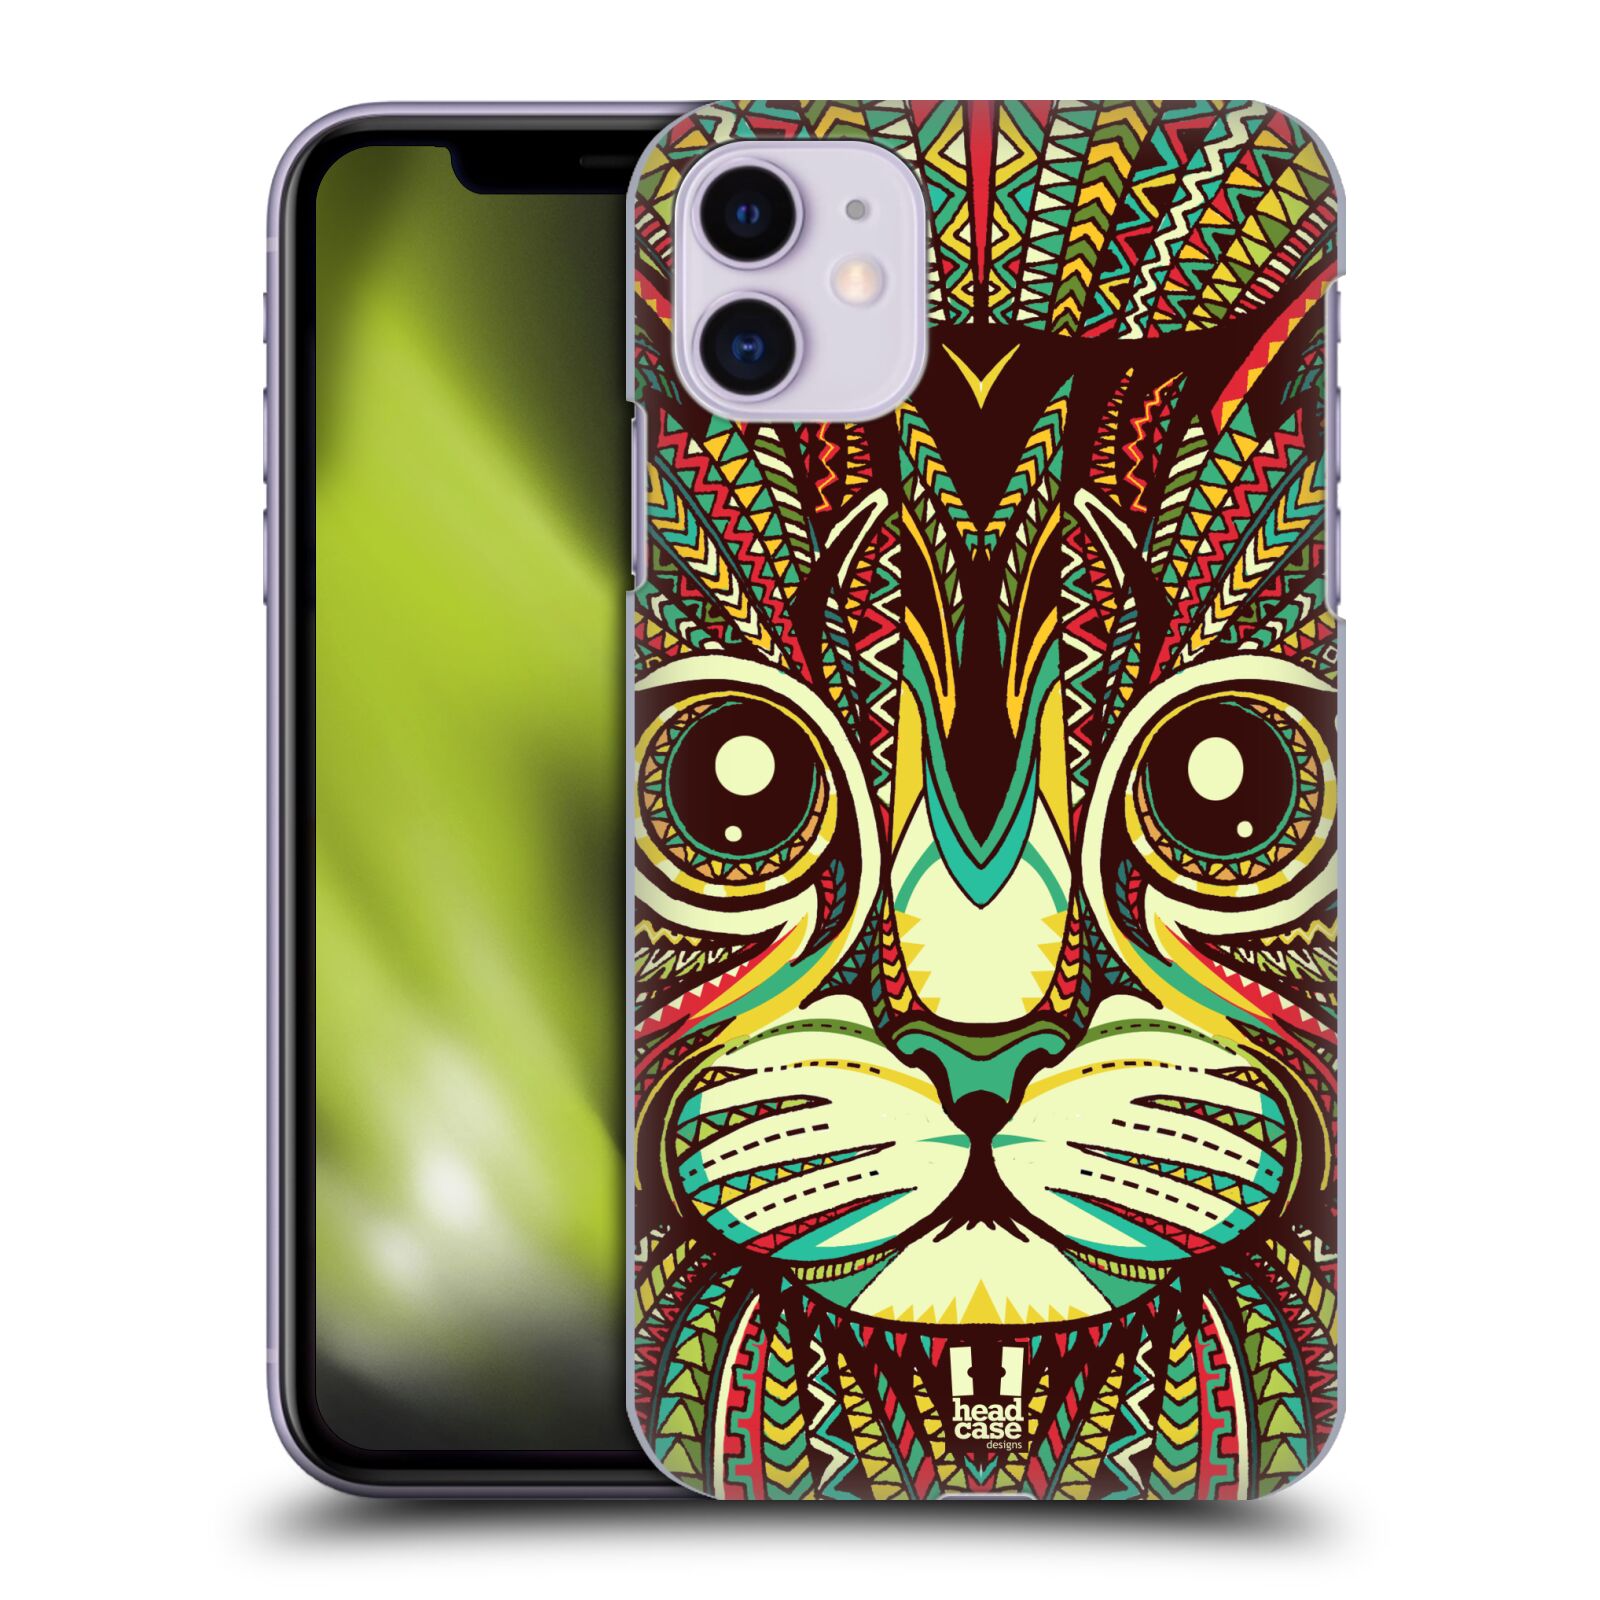 Pouzdro na mobil Apple Iphone 11 - HEAD CASE - vzor Aztécký motiv zvíře 2 kotě